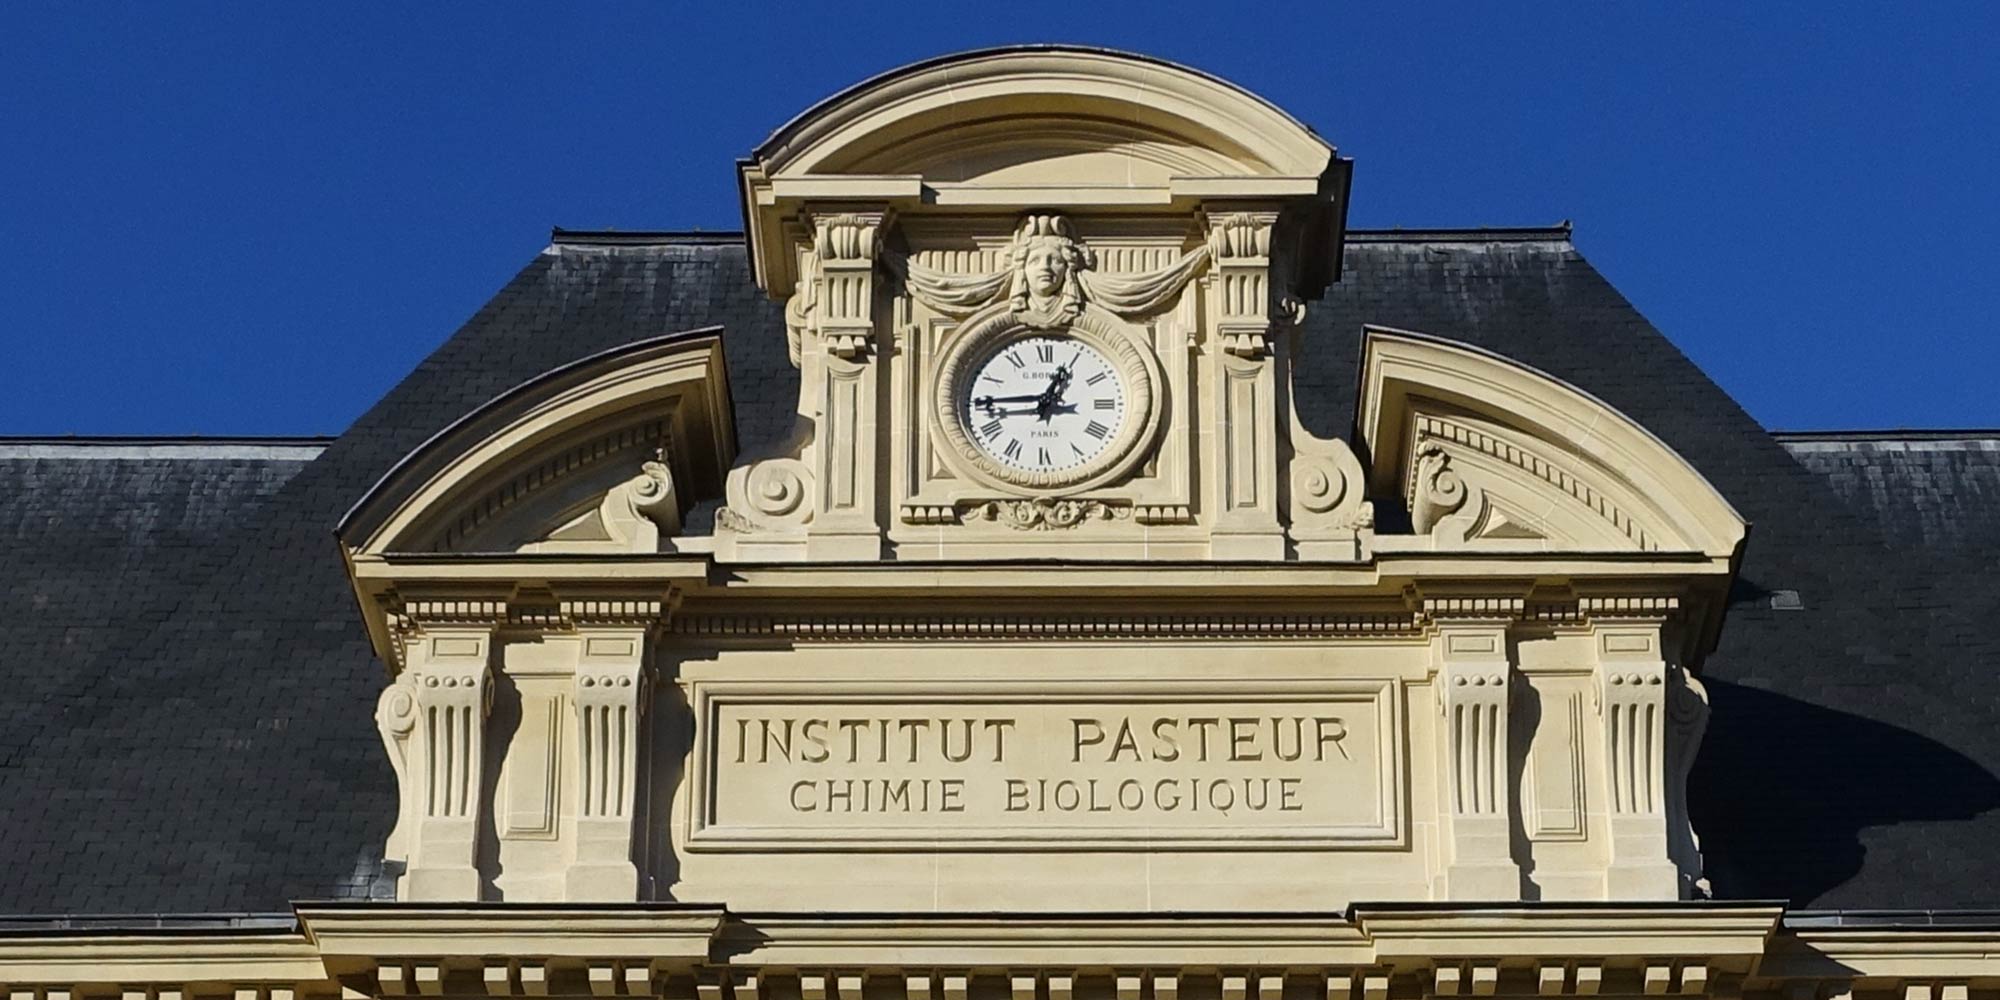 Photo de l'horloge de la façade du bâtiment historique dans le cadre du du projet de réhabilitation de l'institut Pasteur à Paris